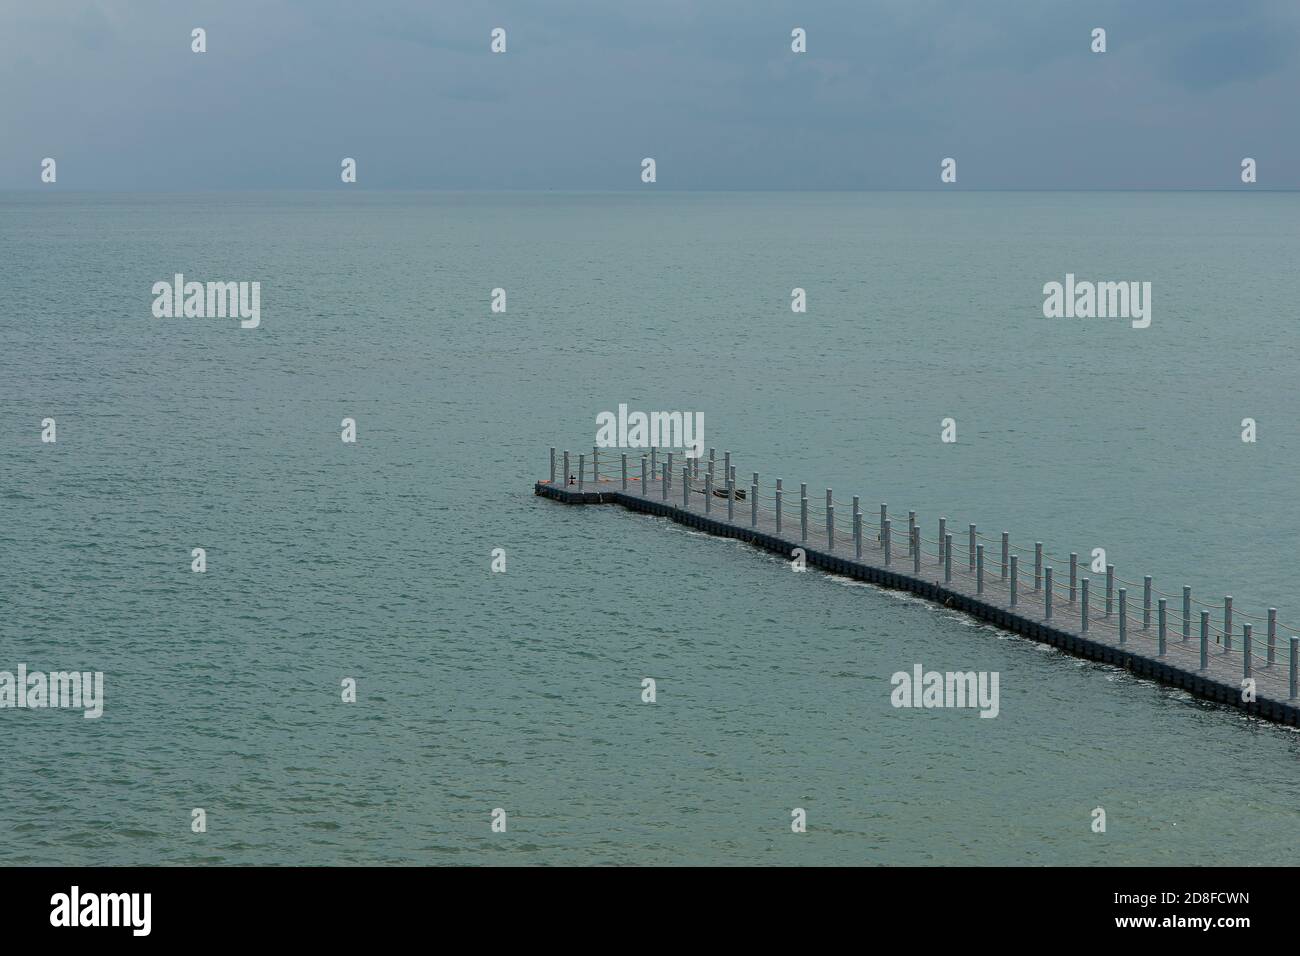 La pasarela de boya se extiende hacia el mar. Foto de stock